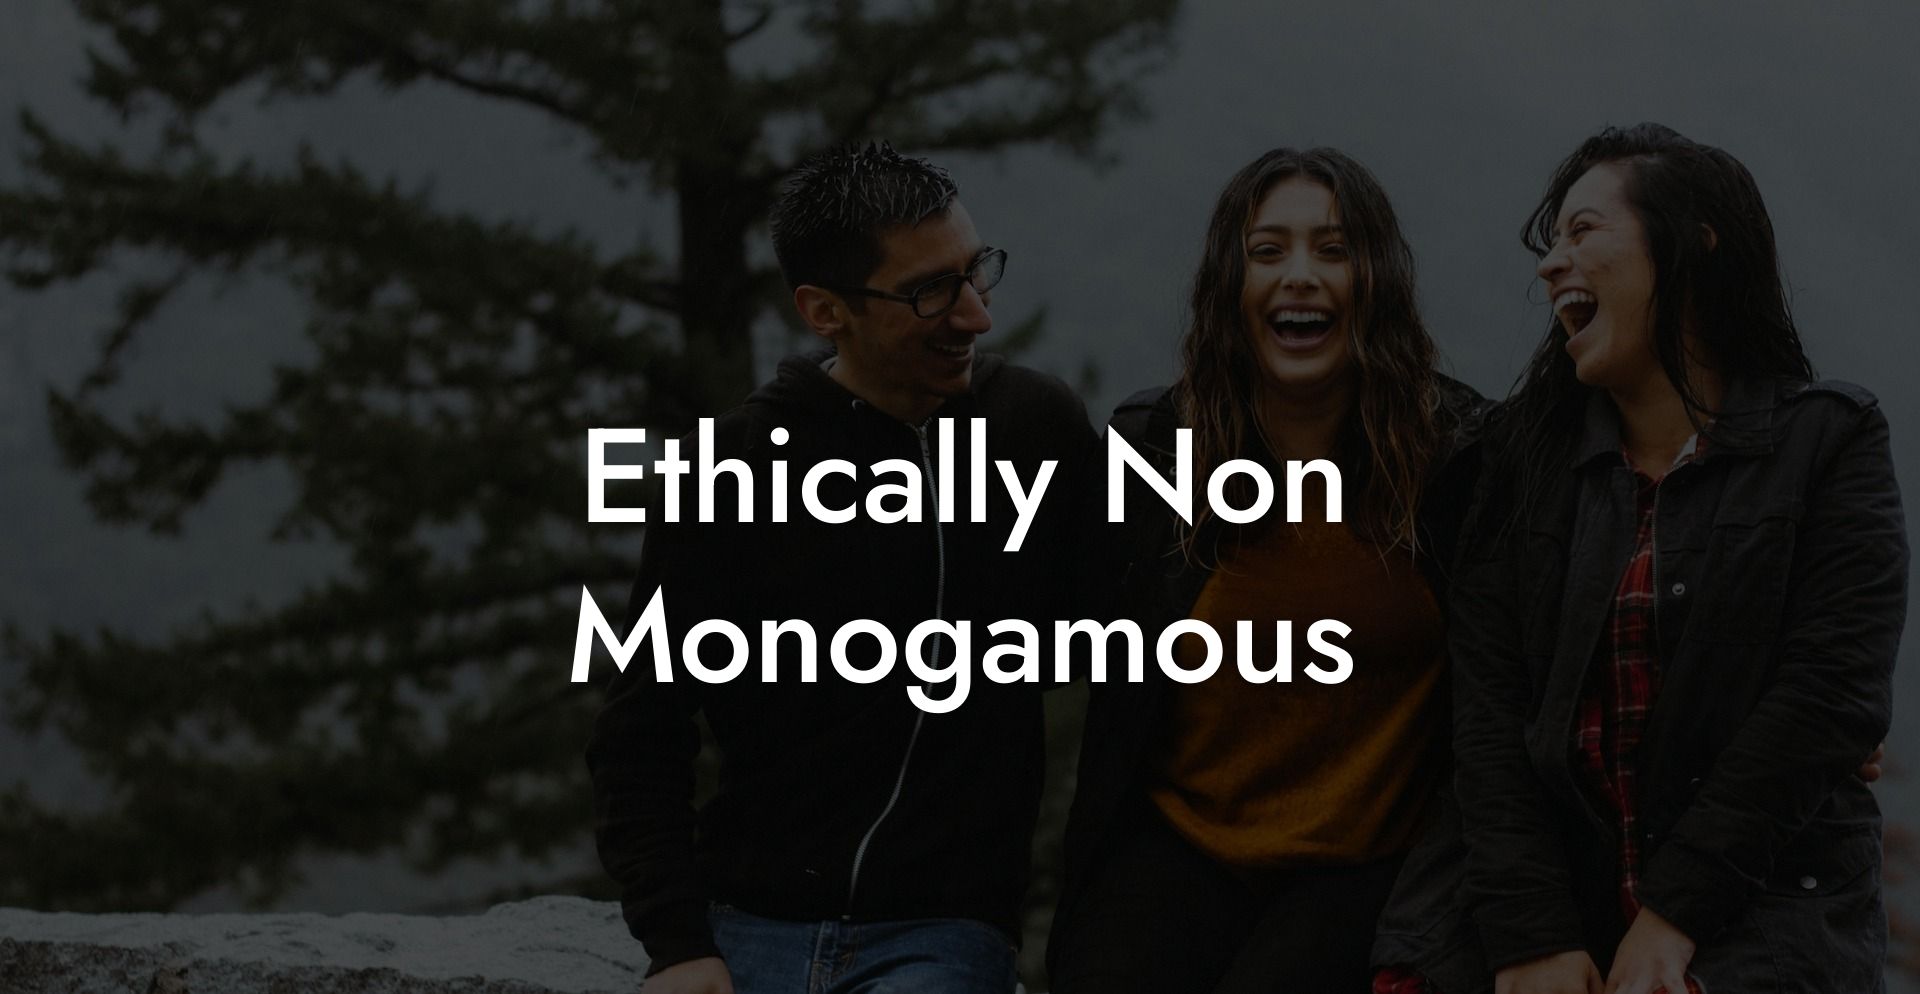 Ethically Non Monogamous